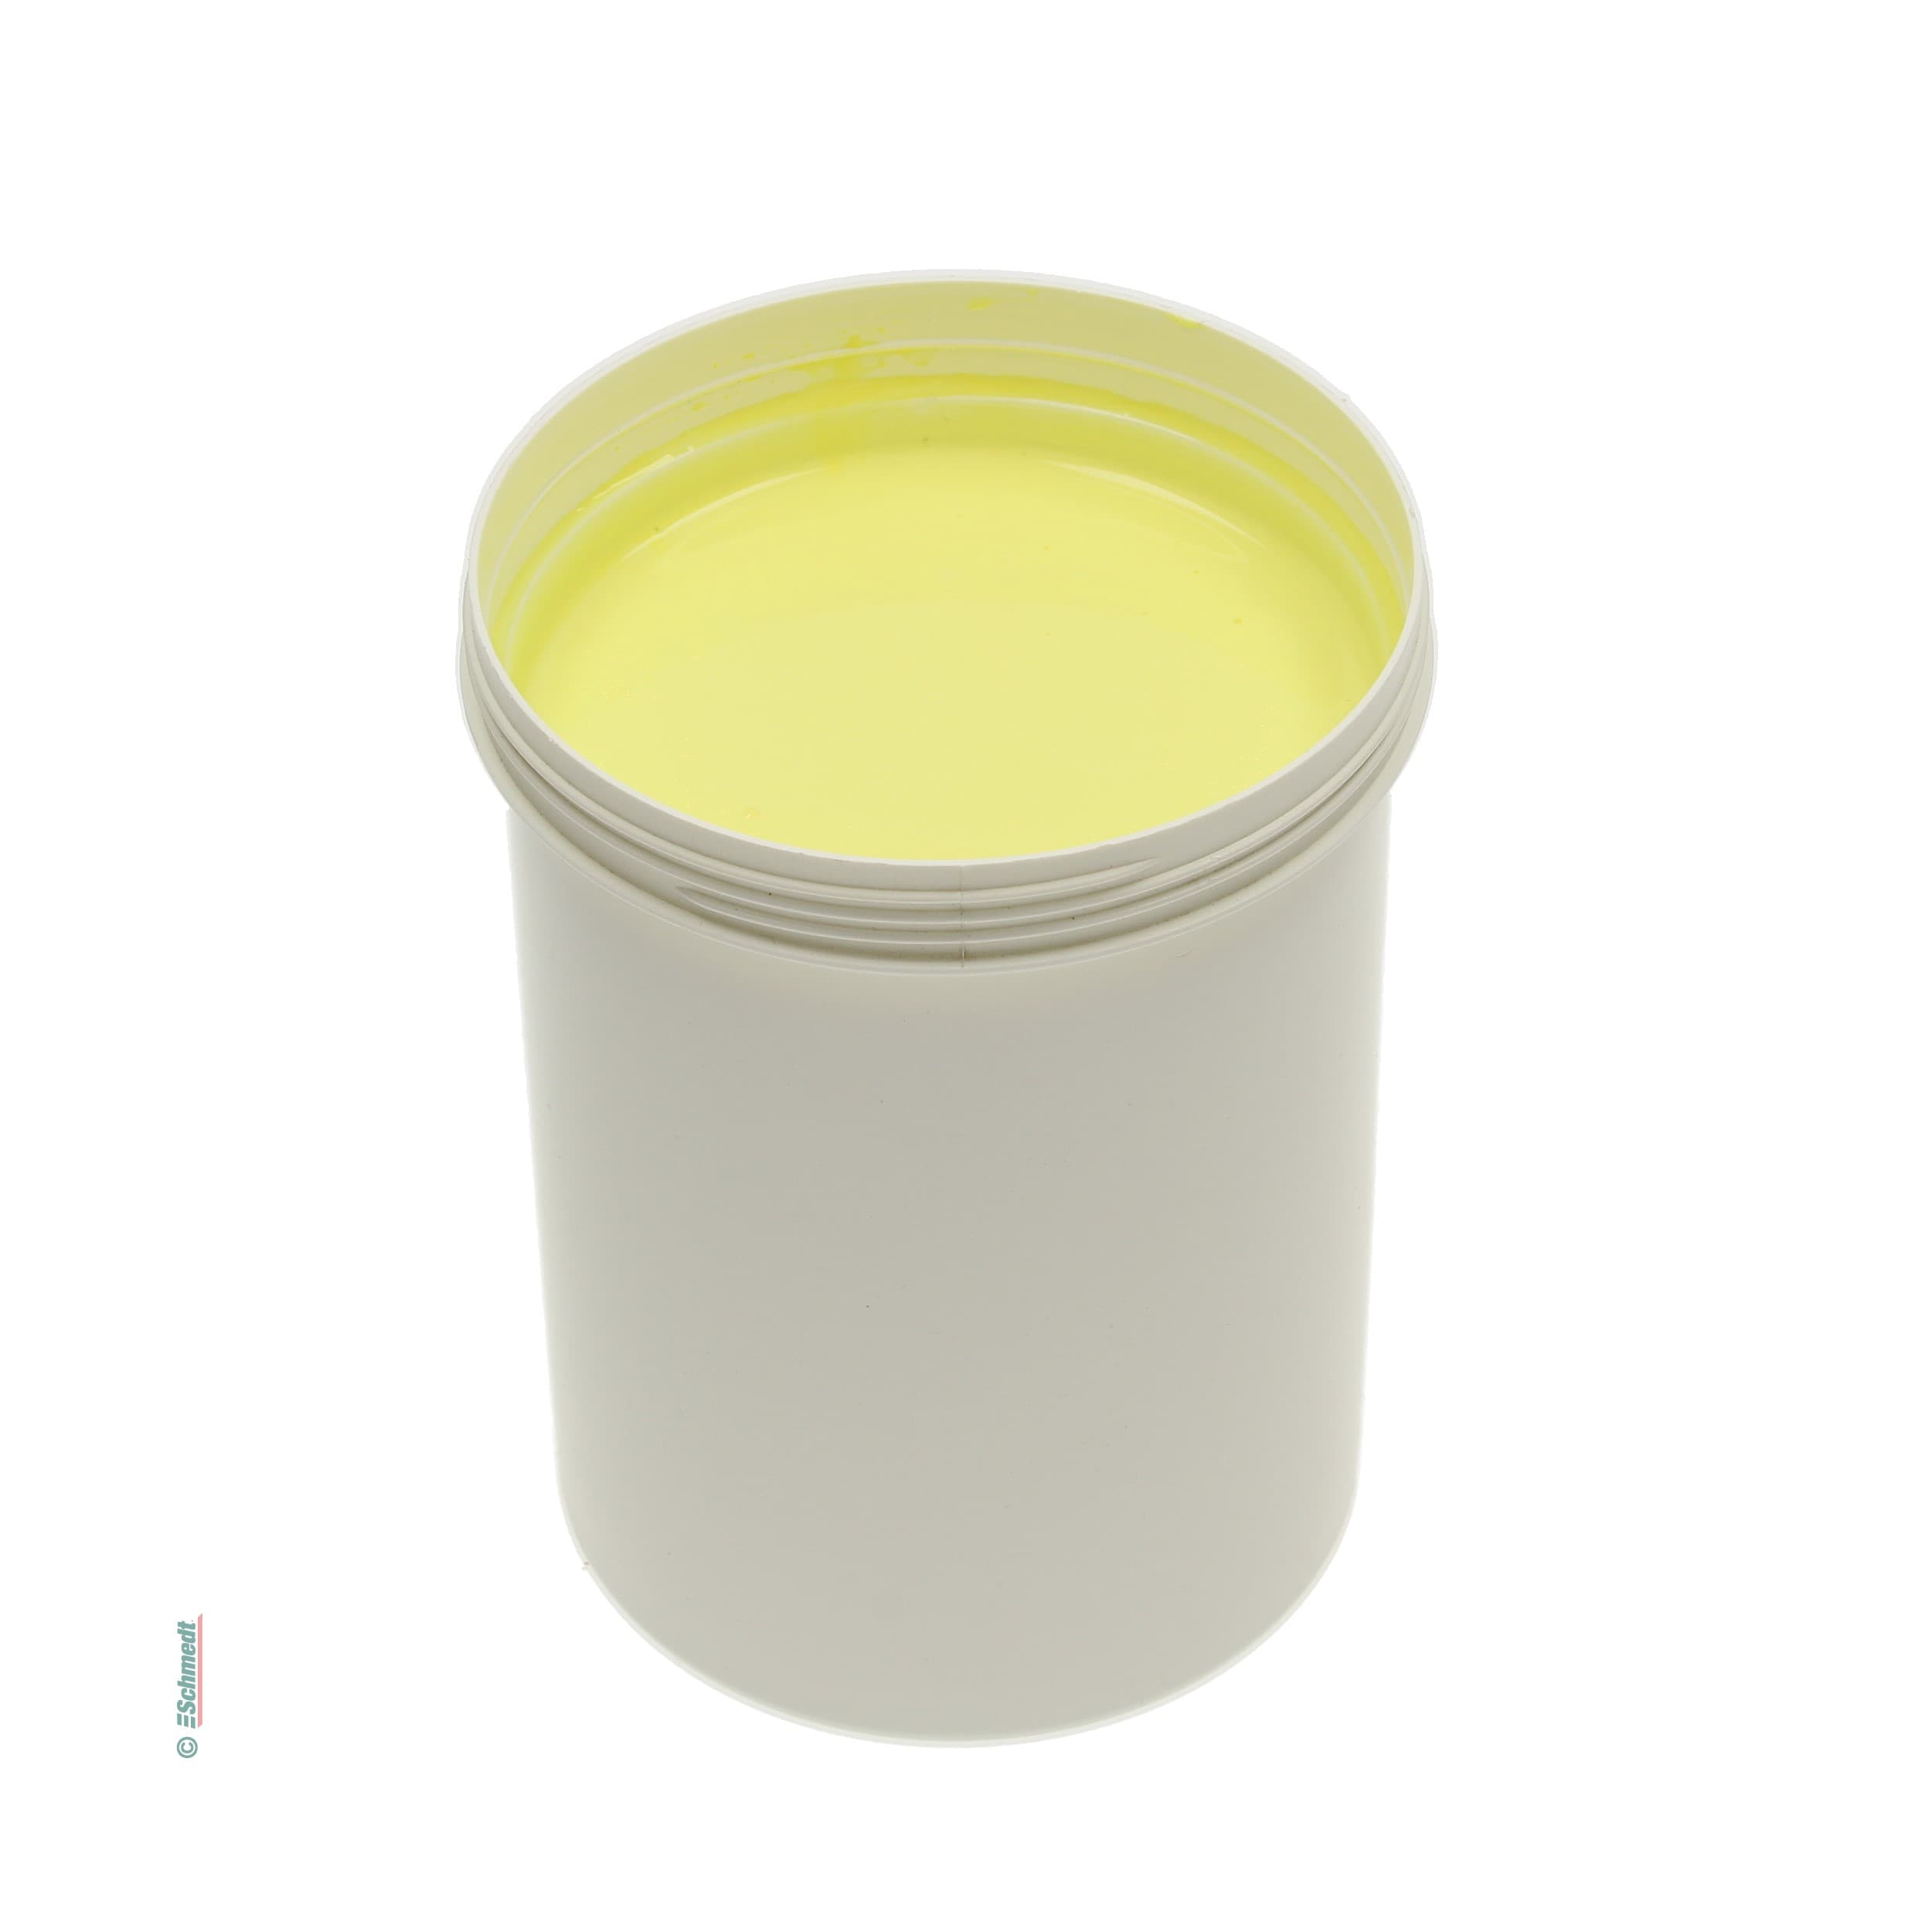 Pintura para cola - Color amarillo - Contenido Botella / 990 ml - para darle color a las colas de dispersión como, por ejemplo, cola para el... - imagen-1